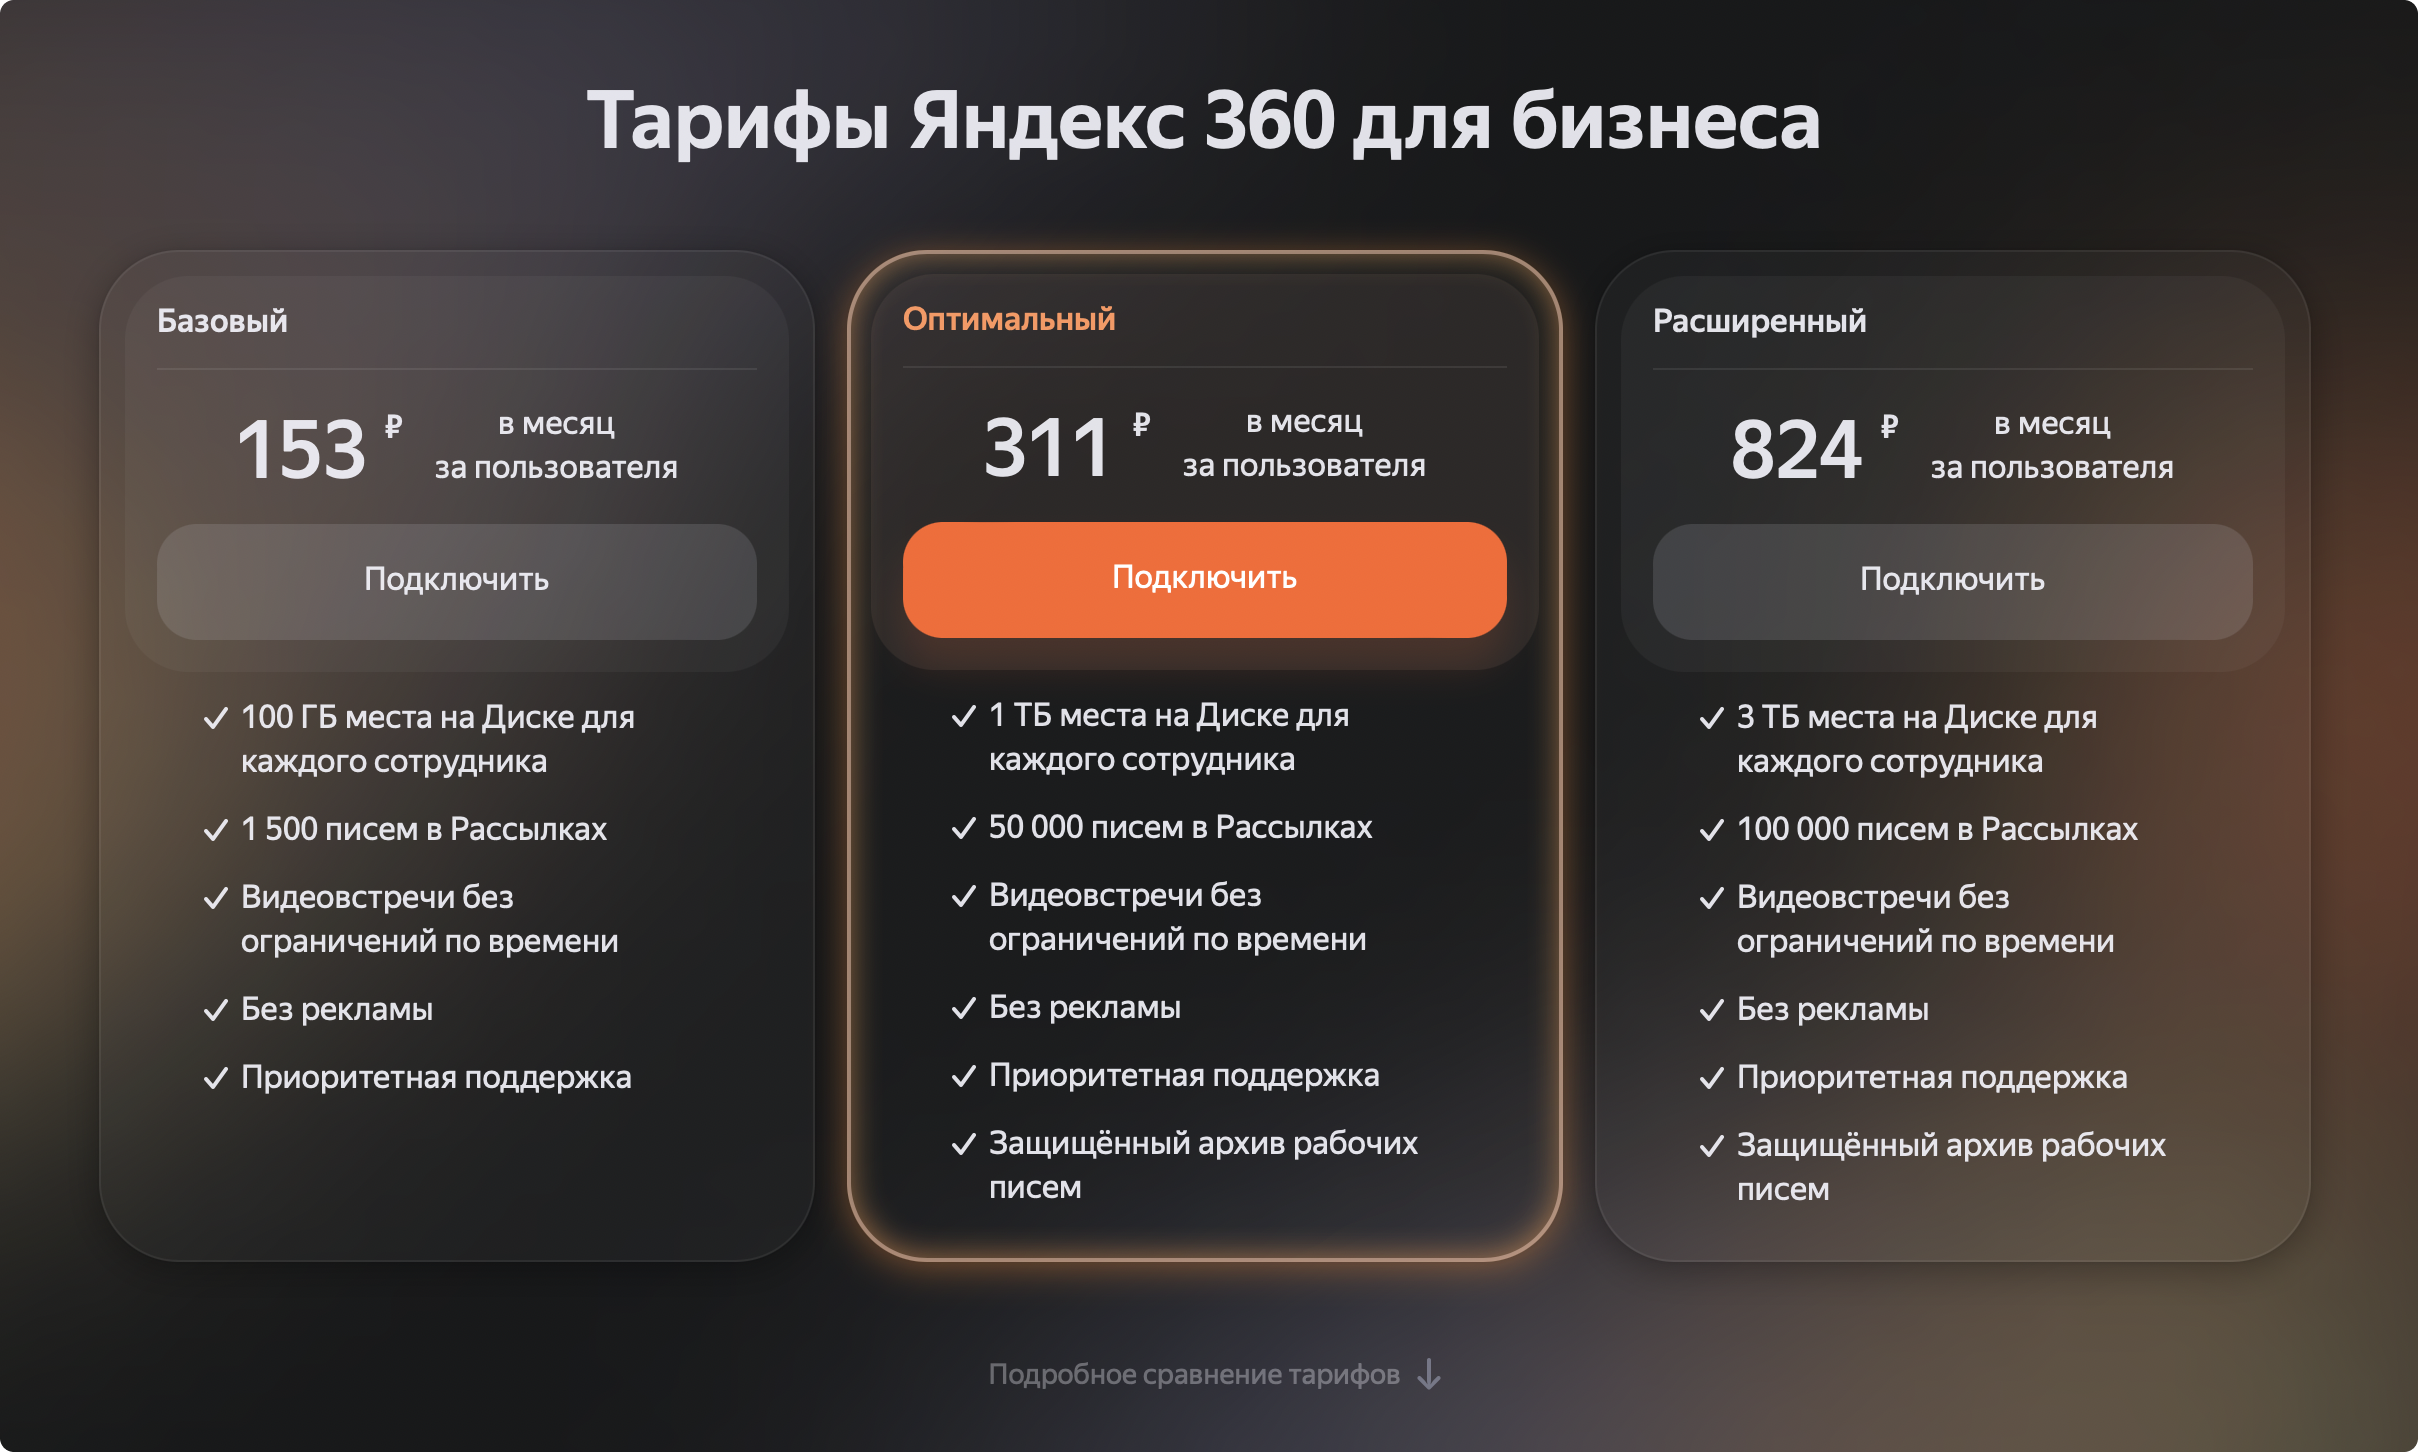 «яндекс.телемост», pruffme, videomost и другие российские сервисы для видеоконференций